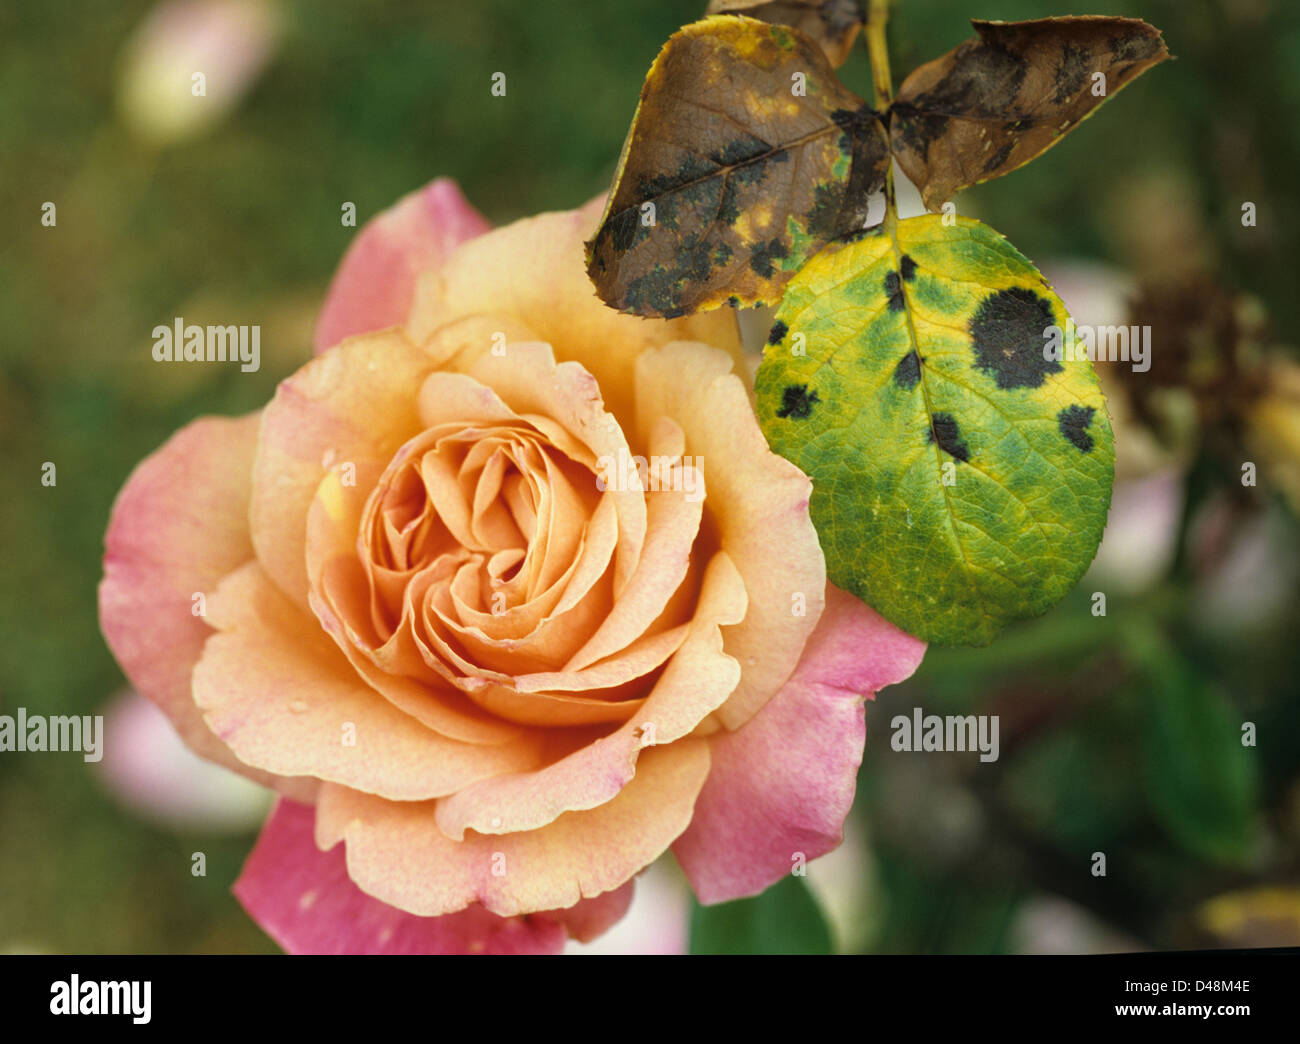 Diplocarpon rosae, tache noire, une maladie fongique des feuilles de rose Banque D'Images